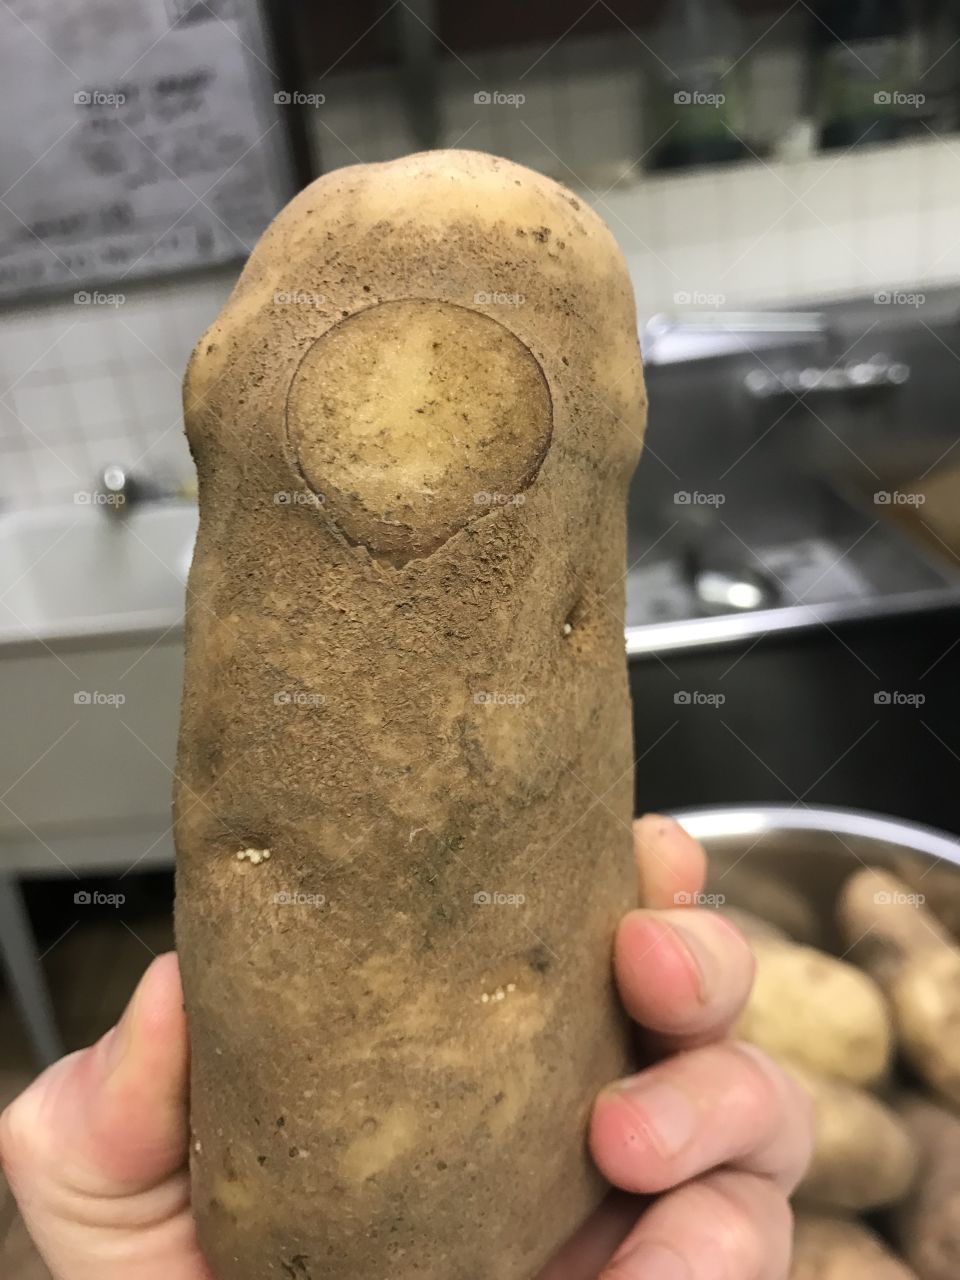 Weird looking potato 